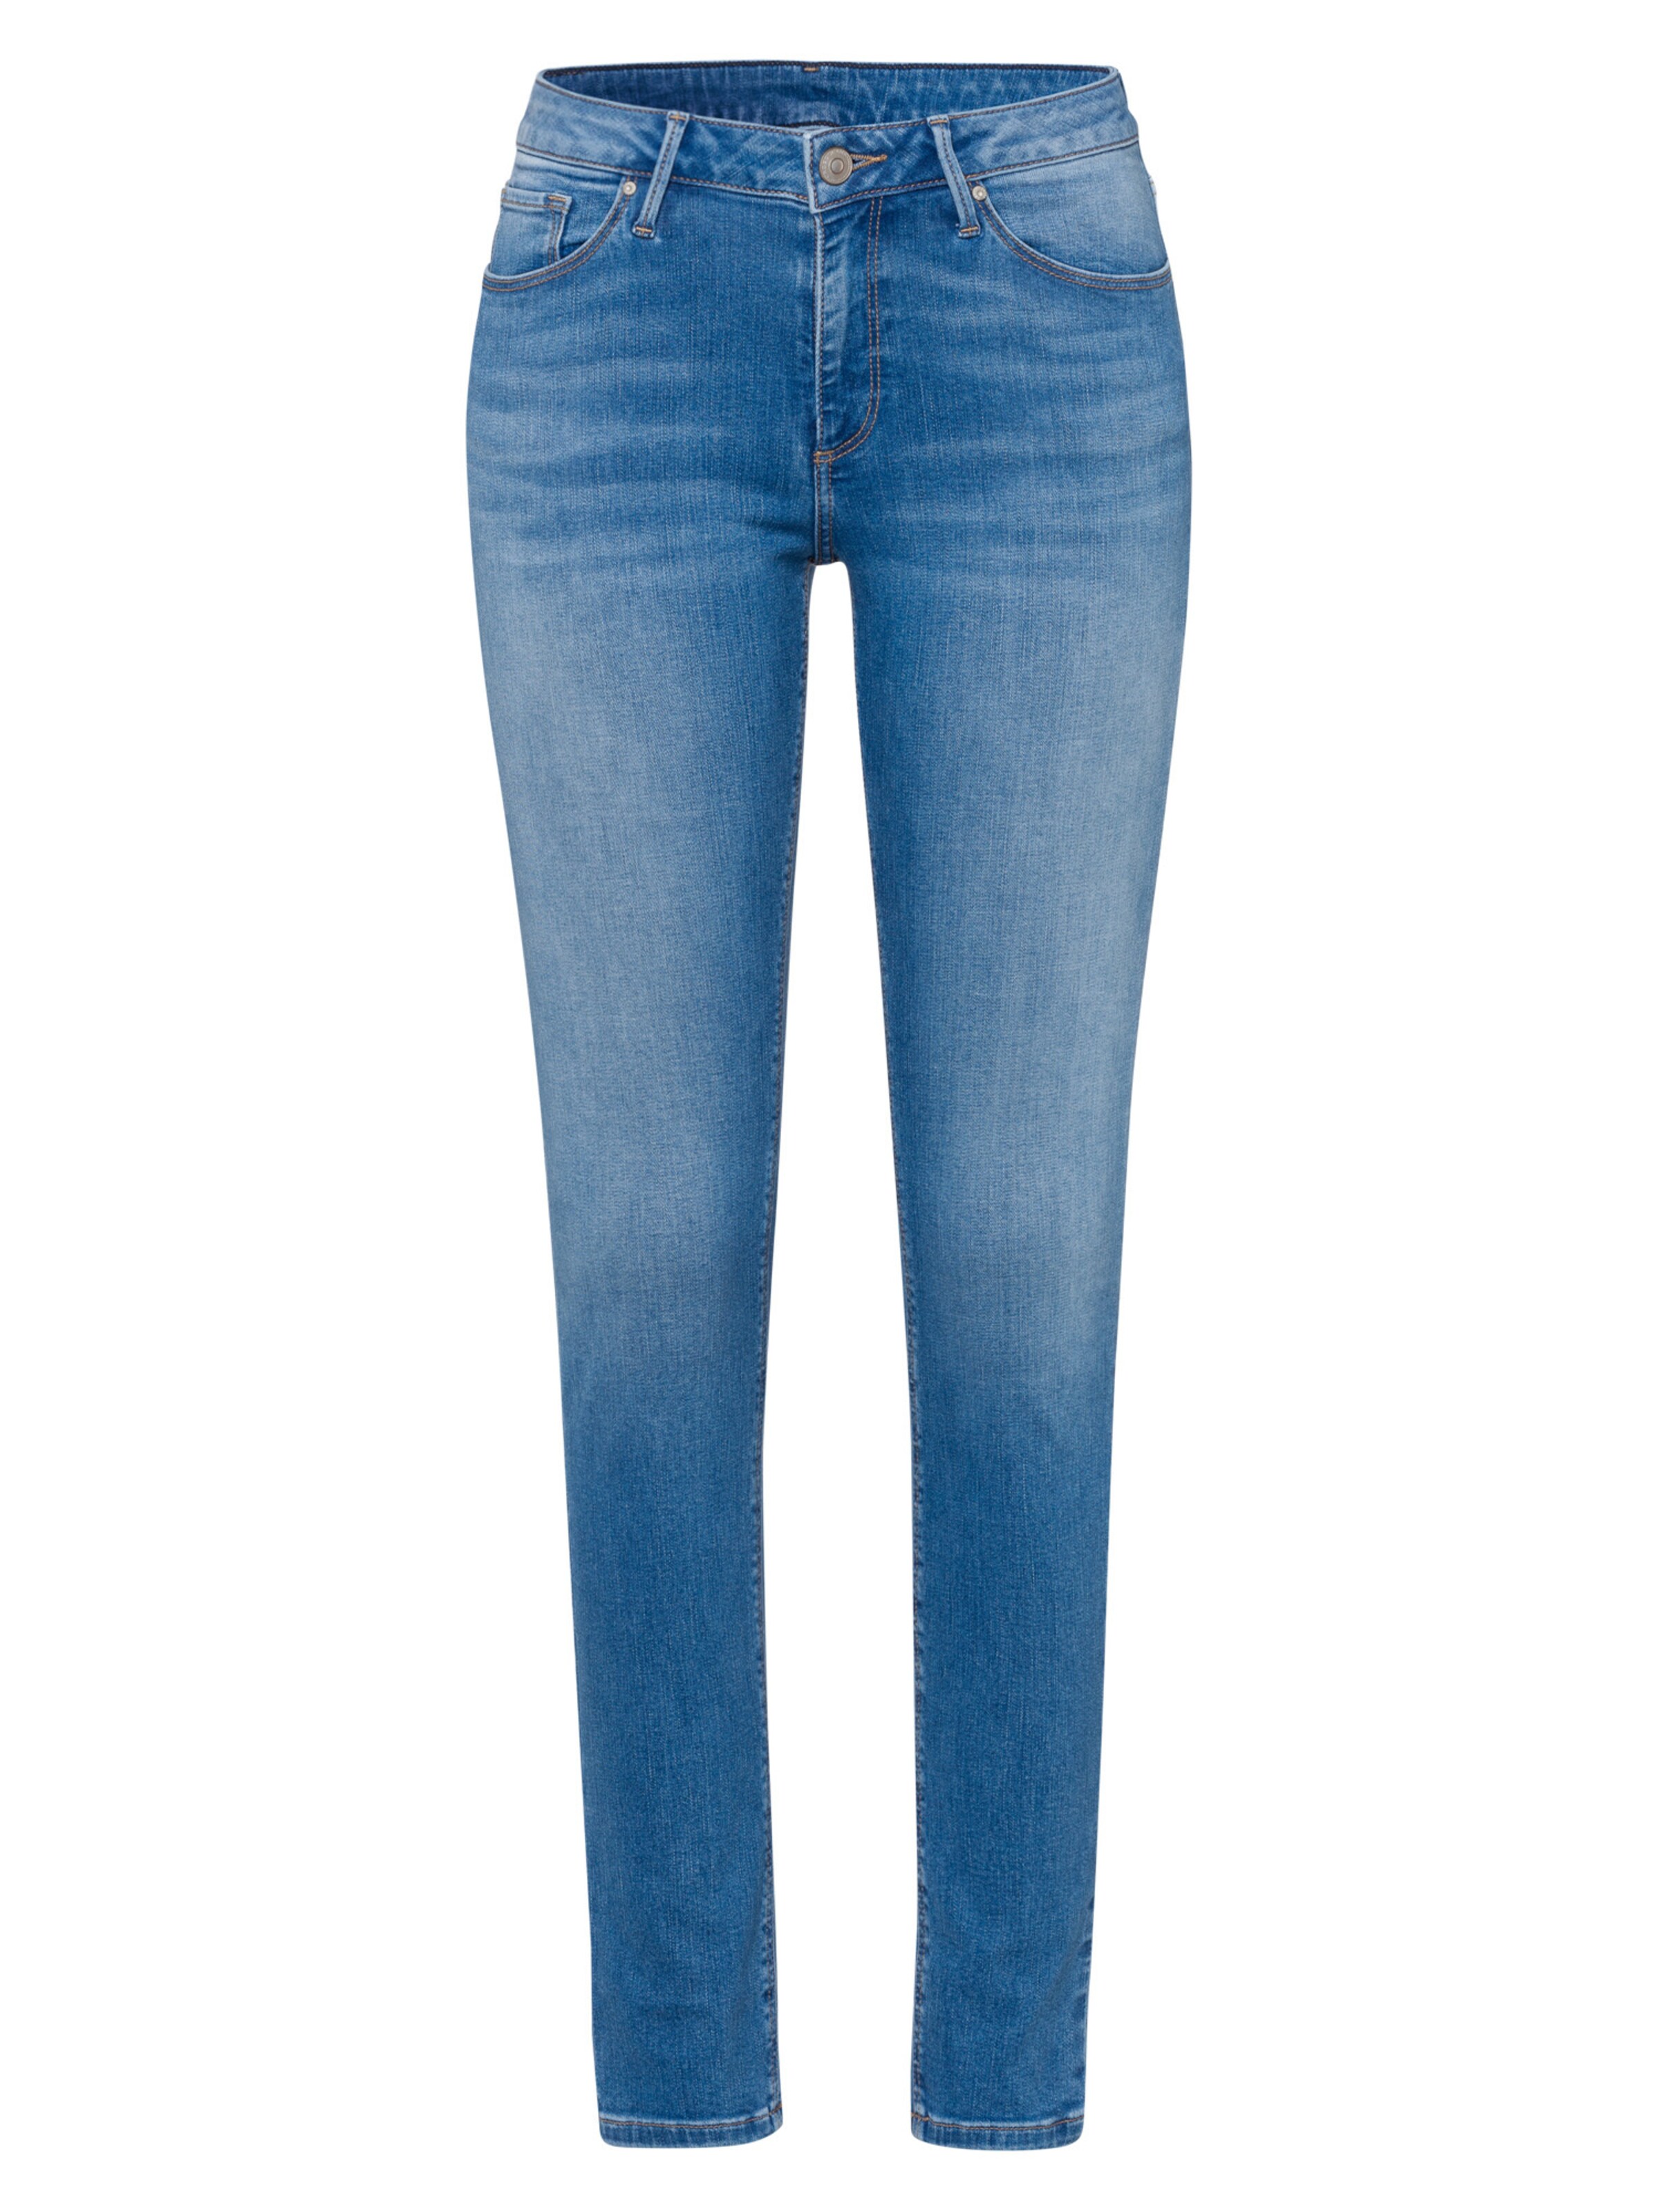 Frauen Große Größen Cross Jeans Jeans - Alan in Blau, Hellblau - RX30620